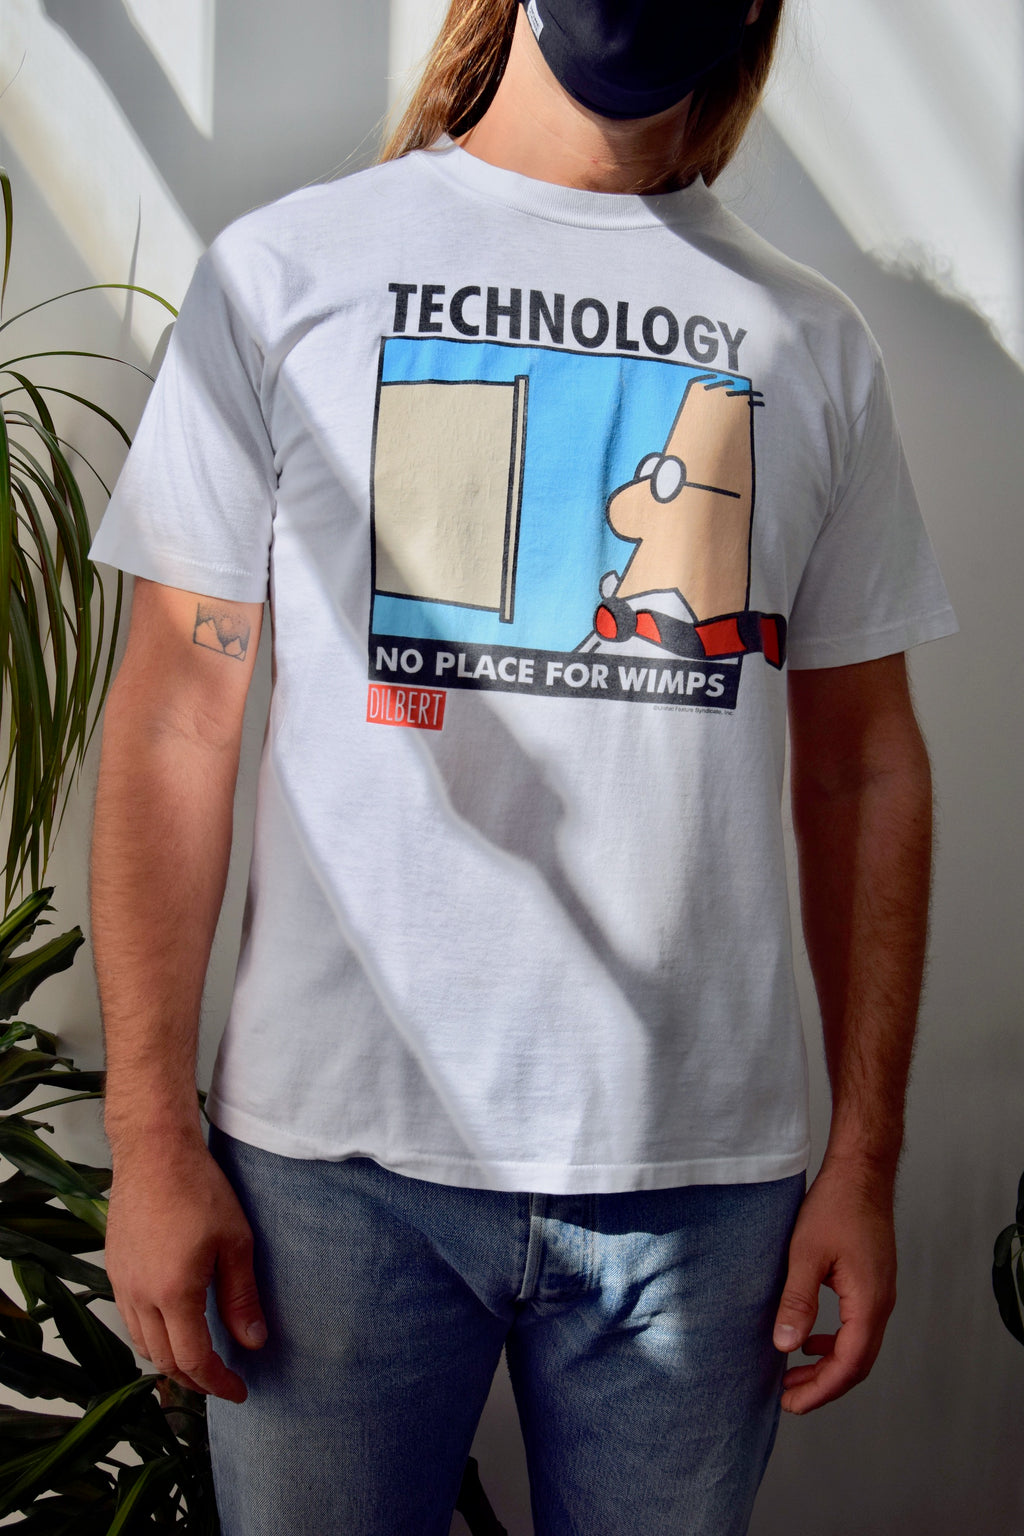 Dilbert Technology T-Shirt